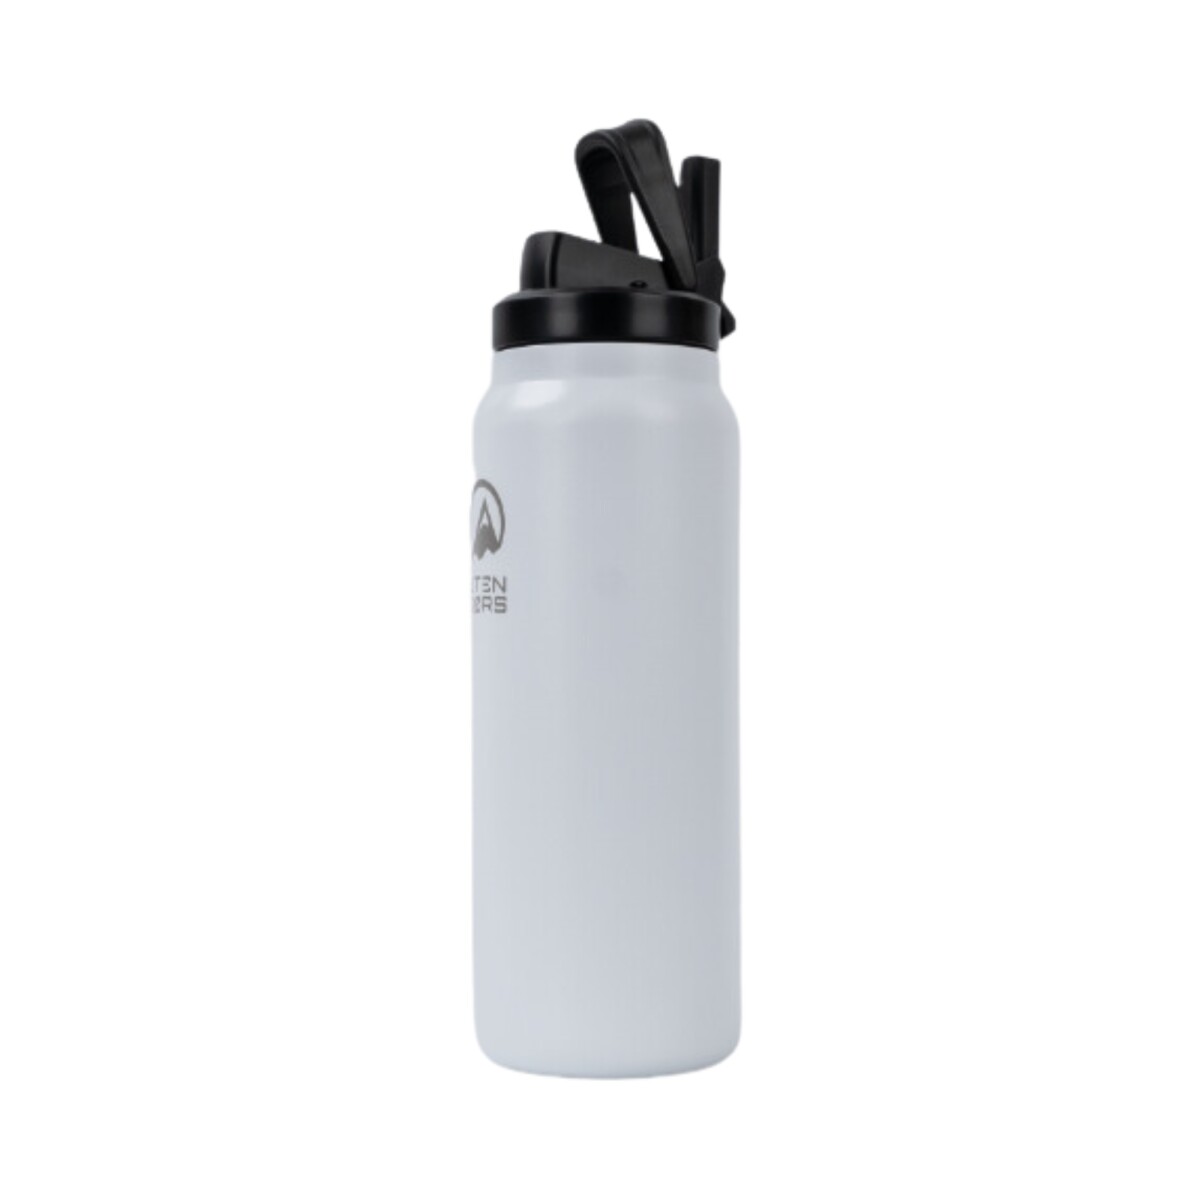 Botellon Utendors 950ml con bota de silicona - Blanco 